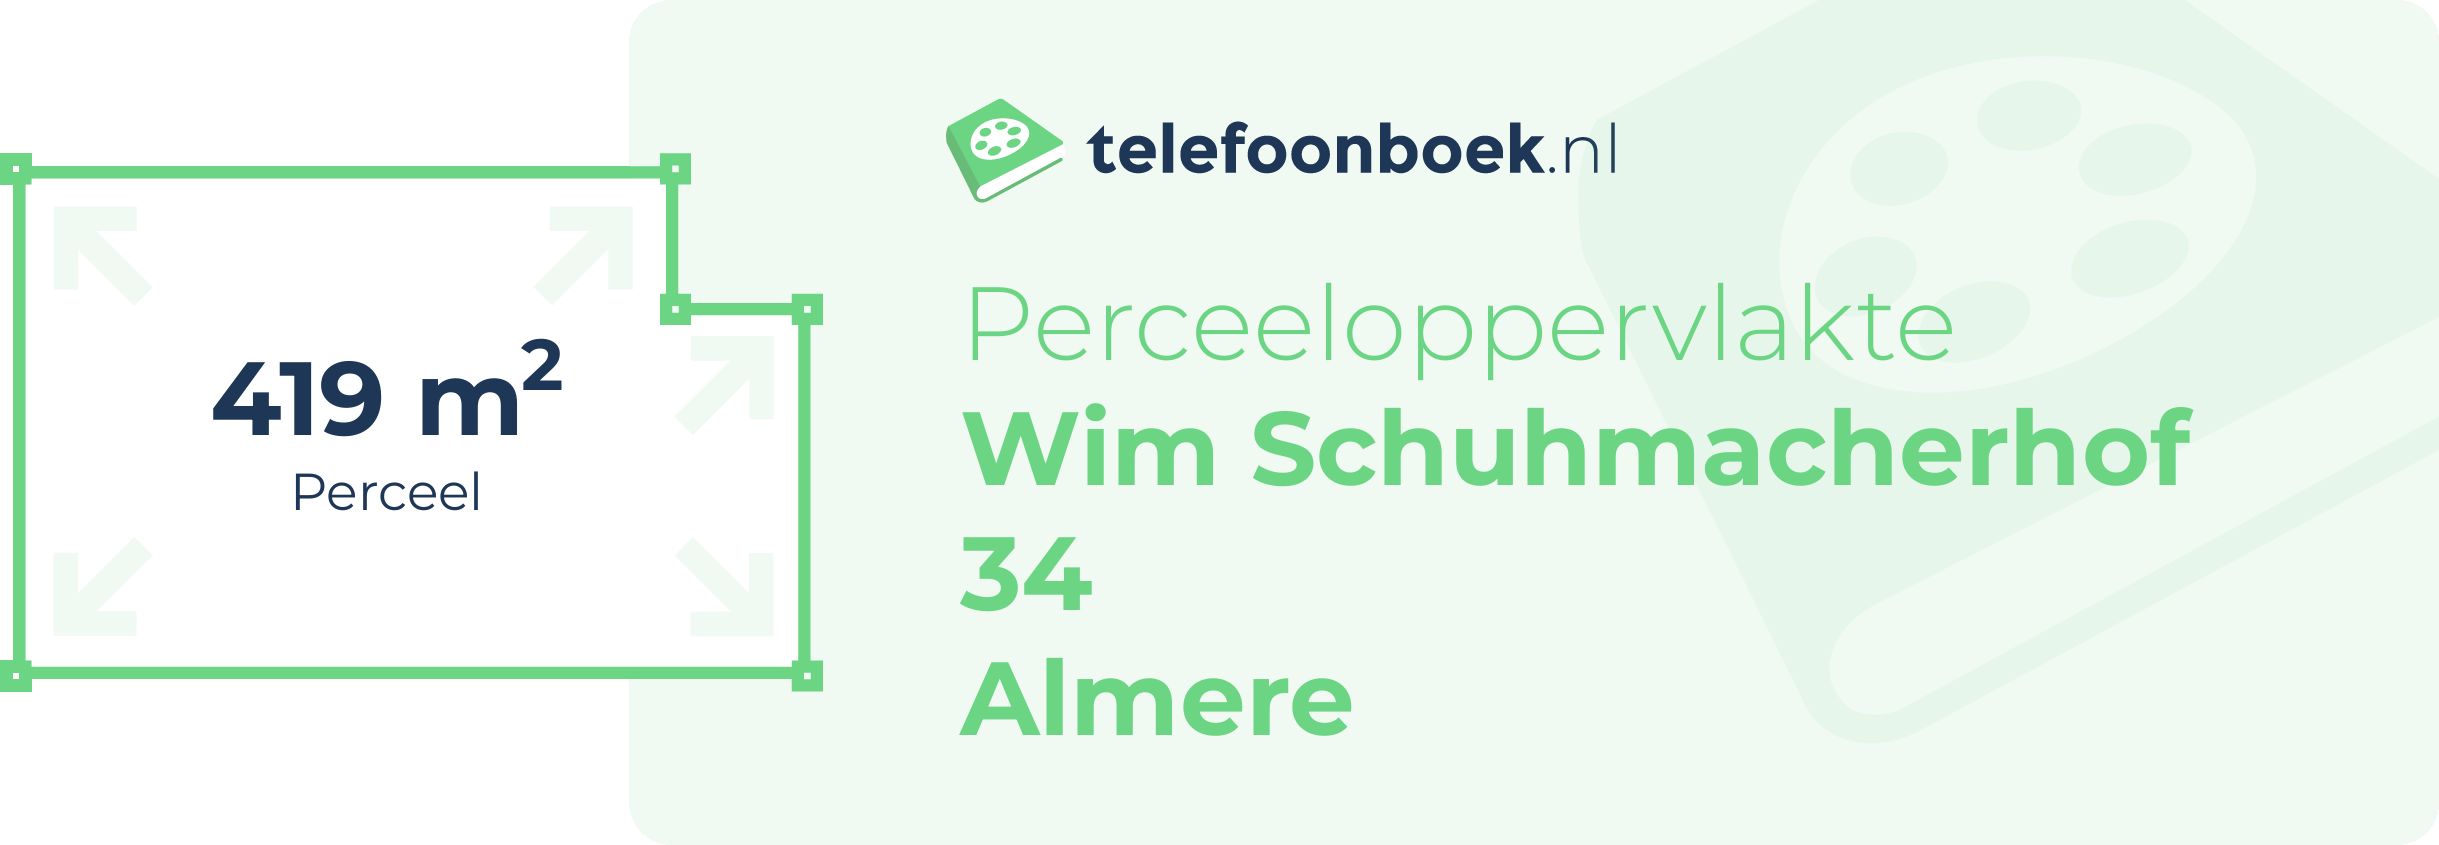 Perceeloppervlakte Wim Schuhmacherhof 34 Almere